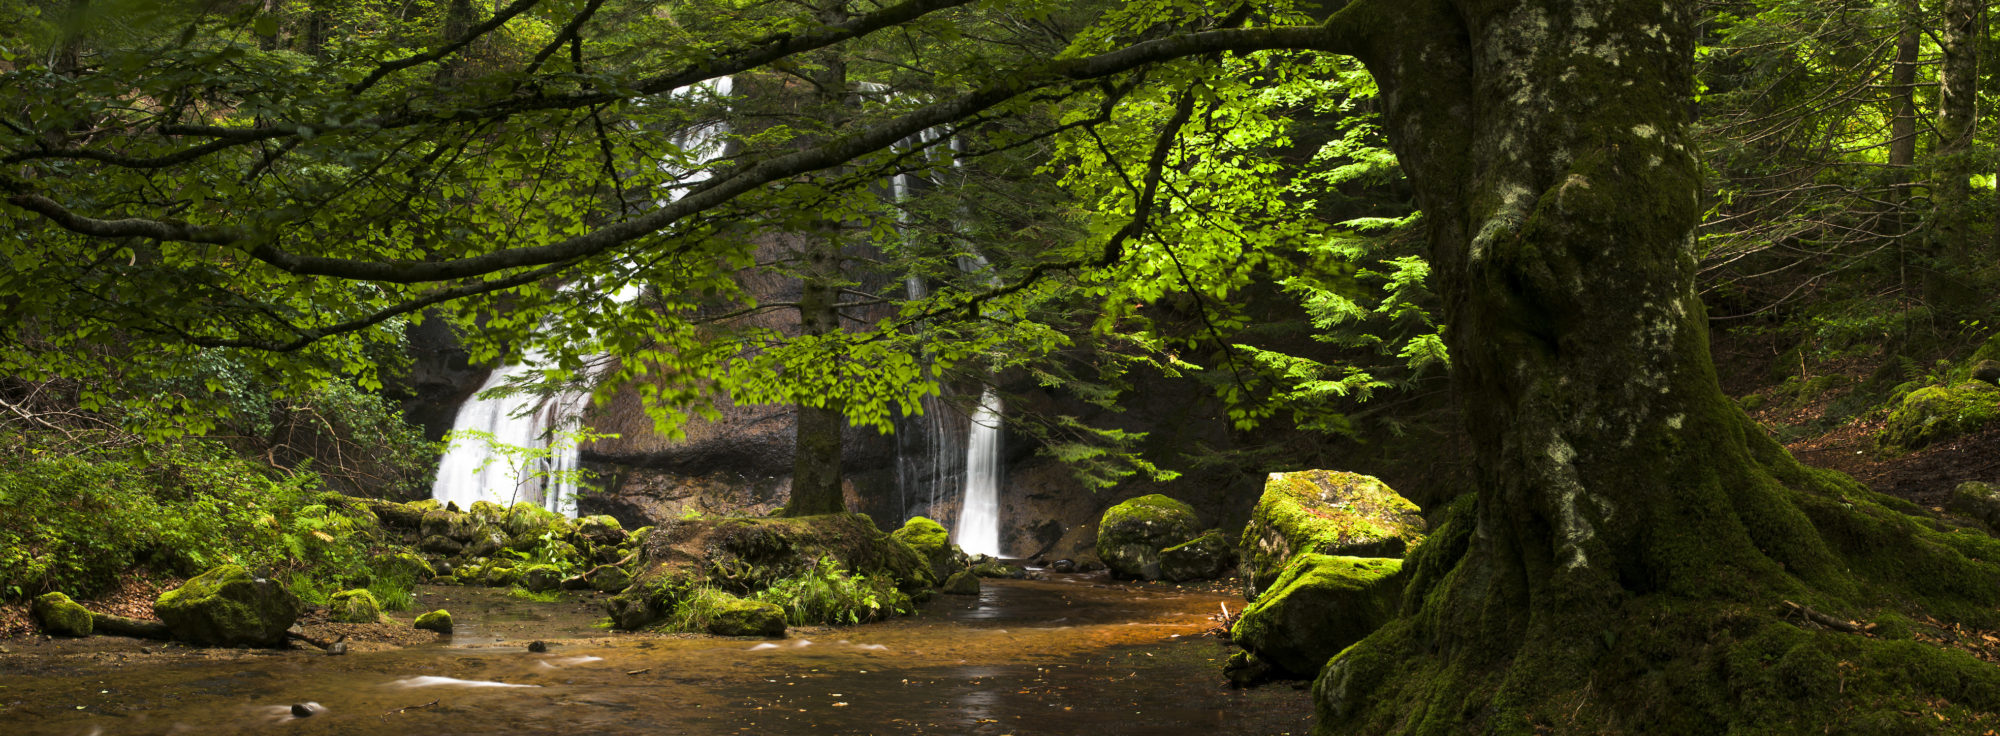 Torrent d'Auvergne réserve naturelle